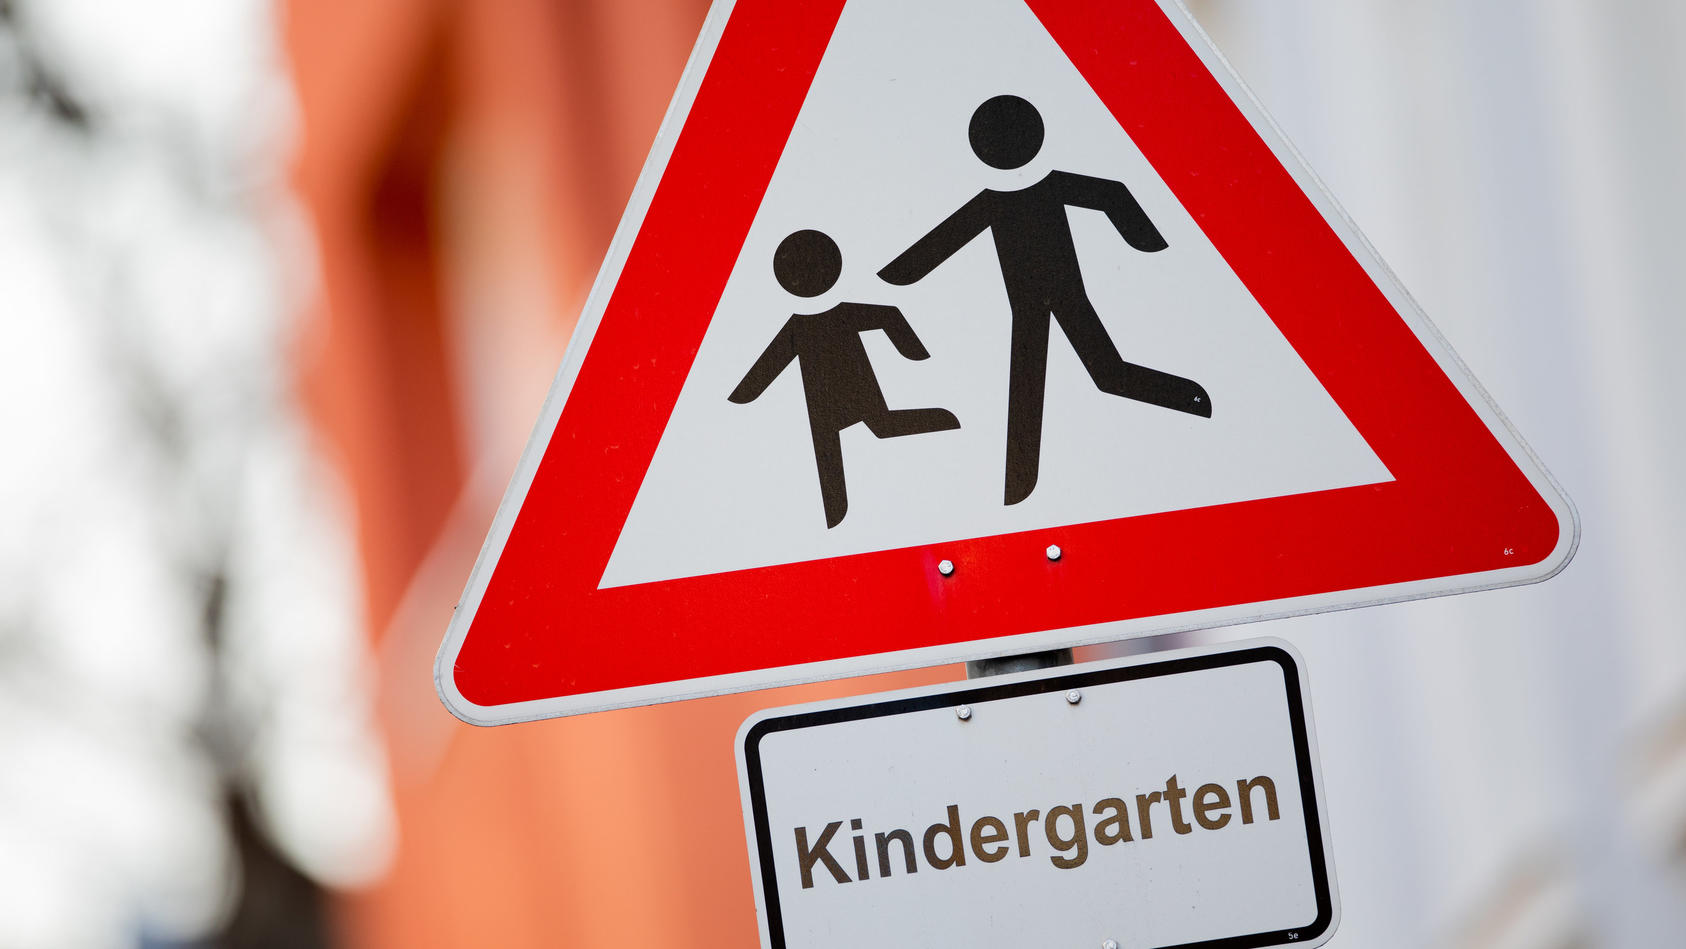 23.02.2021, Nordrhein-Westfalen, Köln: Ein Verkehrsschild "Achtung, Kinder!" mit dem Hinweis "Kindergarten" steht vor einer Kindertagesstätte (Kita). Seit dem 22.02.2021 haben die Kindertagesstätten im eingeschränkten Regelbetrieb wieder für alle Kin